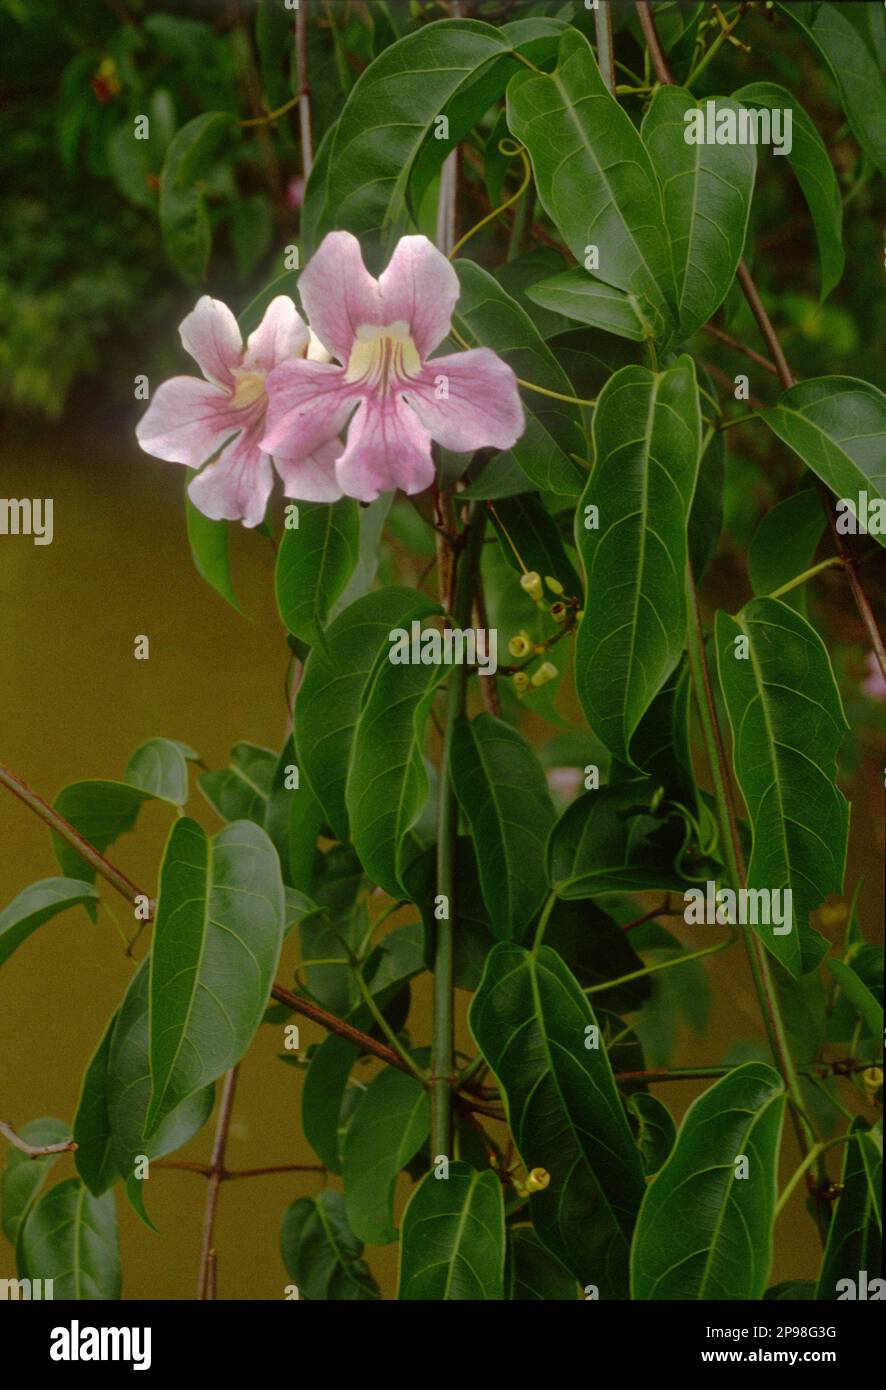 Cydista aequinoctialis (family: Bignoniaceae), a liana in tropical rainforest on banks of rio Maiguari, Amazon estuary, Pará State, Brazil. Stock Photo